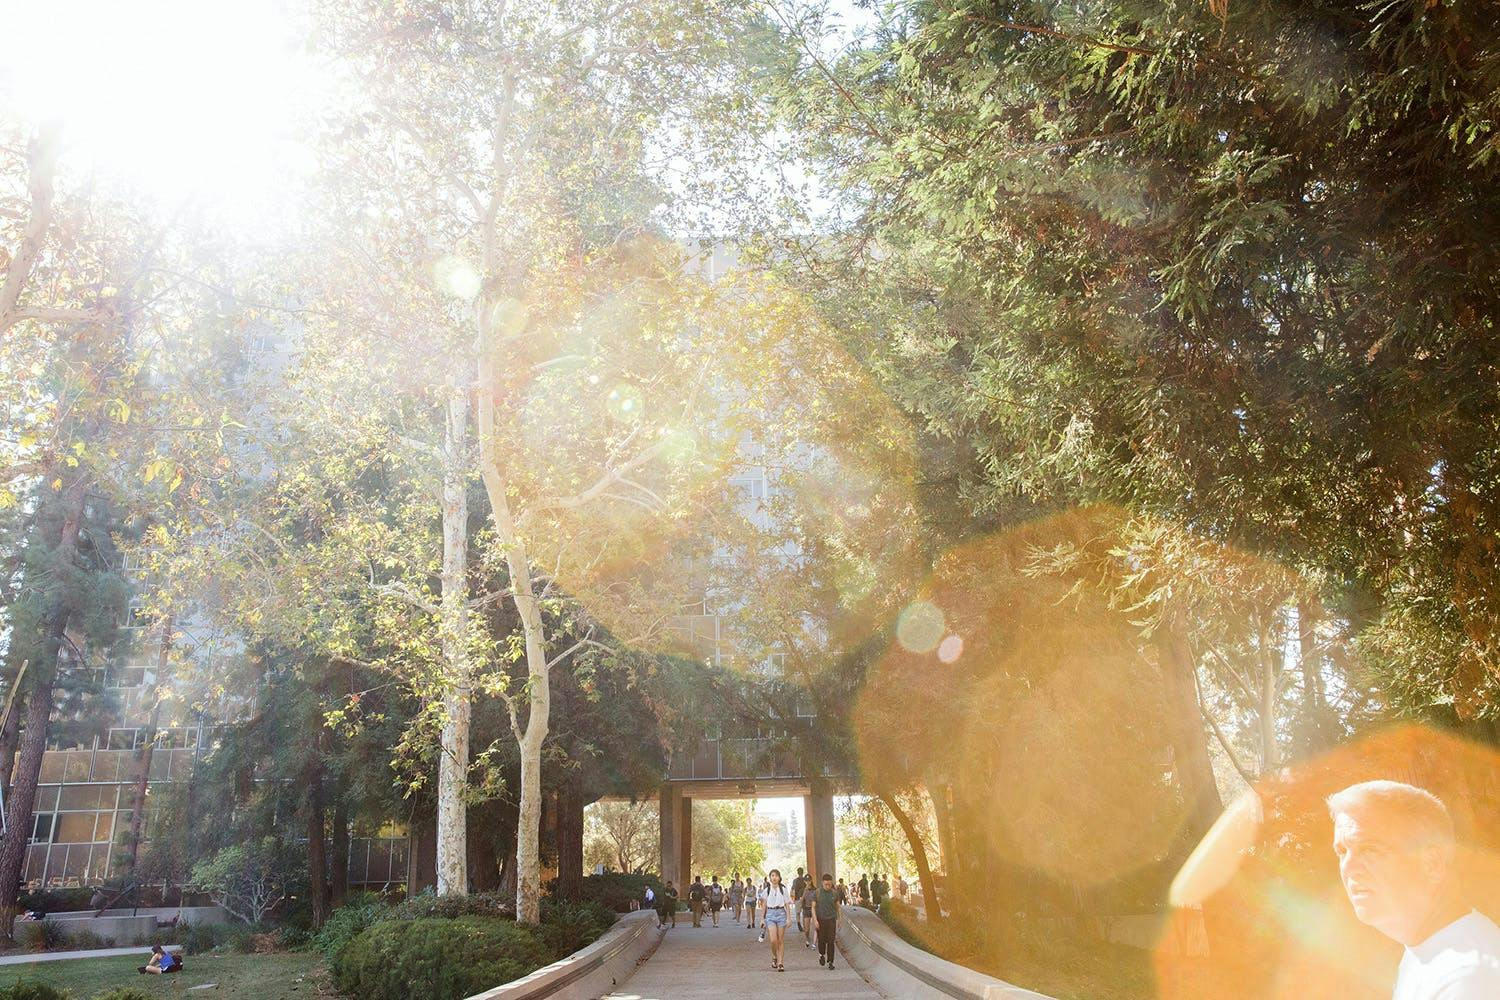 UCLA campus walkway